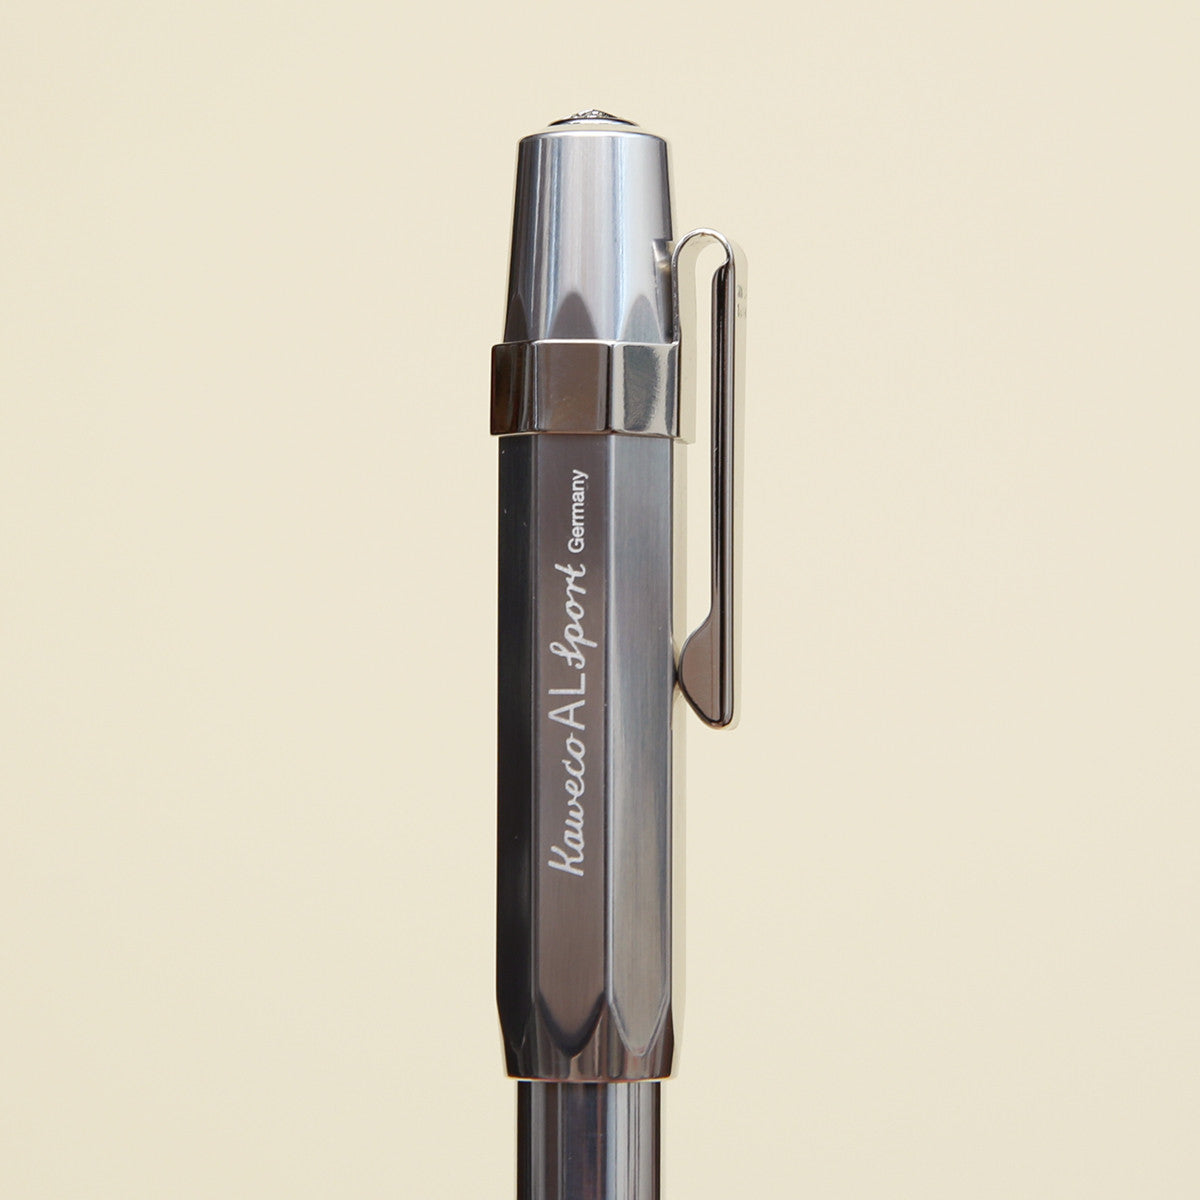 Kaweco Sport Pen Clip - Chrome – The Good Liver